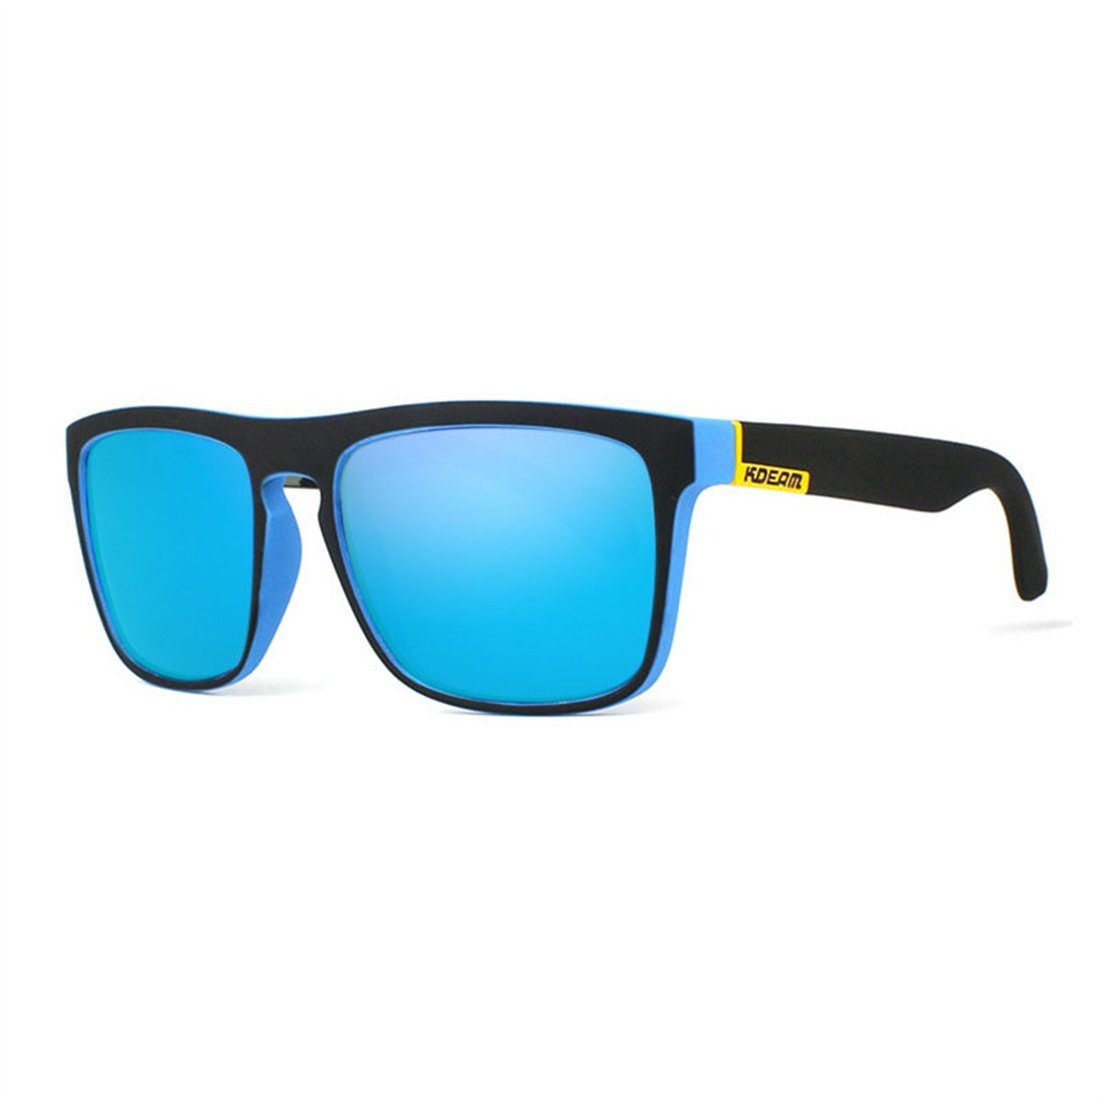 DÖRÖY Sonnenbrille Polarisierende Sonnenbrillen für Männer und Frauen, Sonnenbrillen